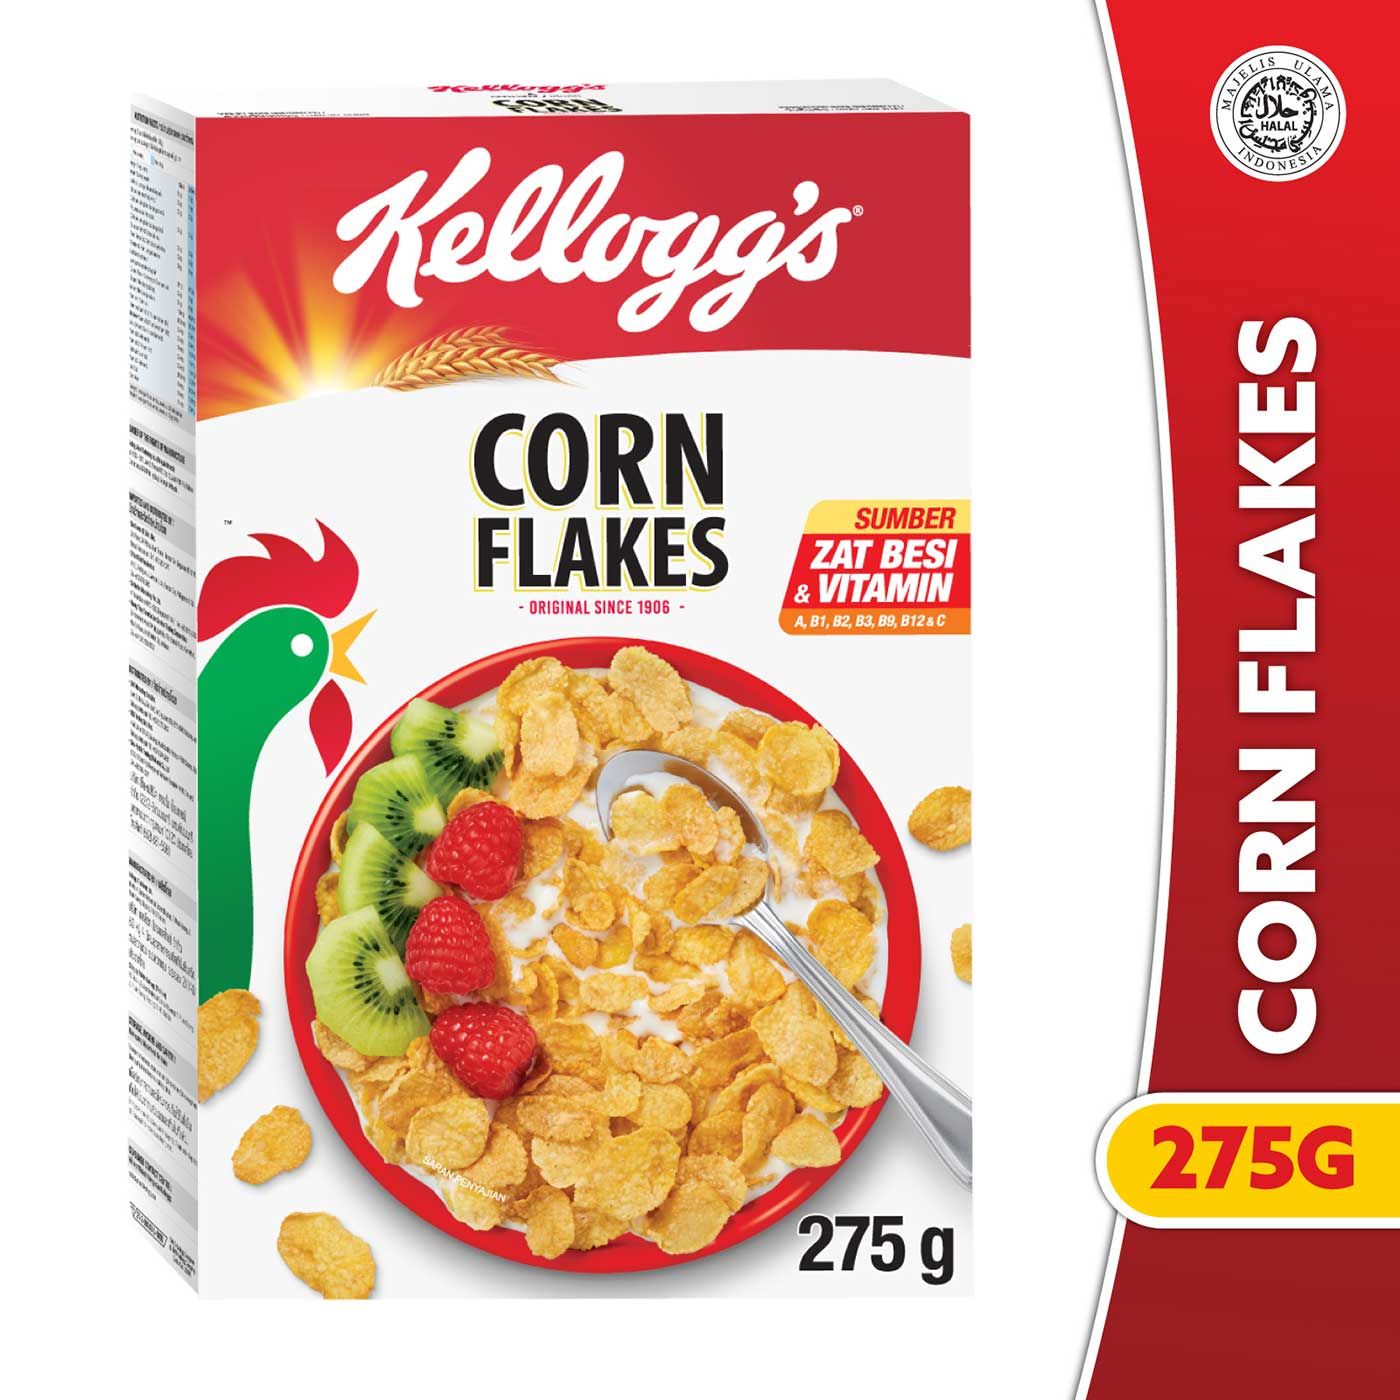 Kelloggs Corn Flakes 275g - 1